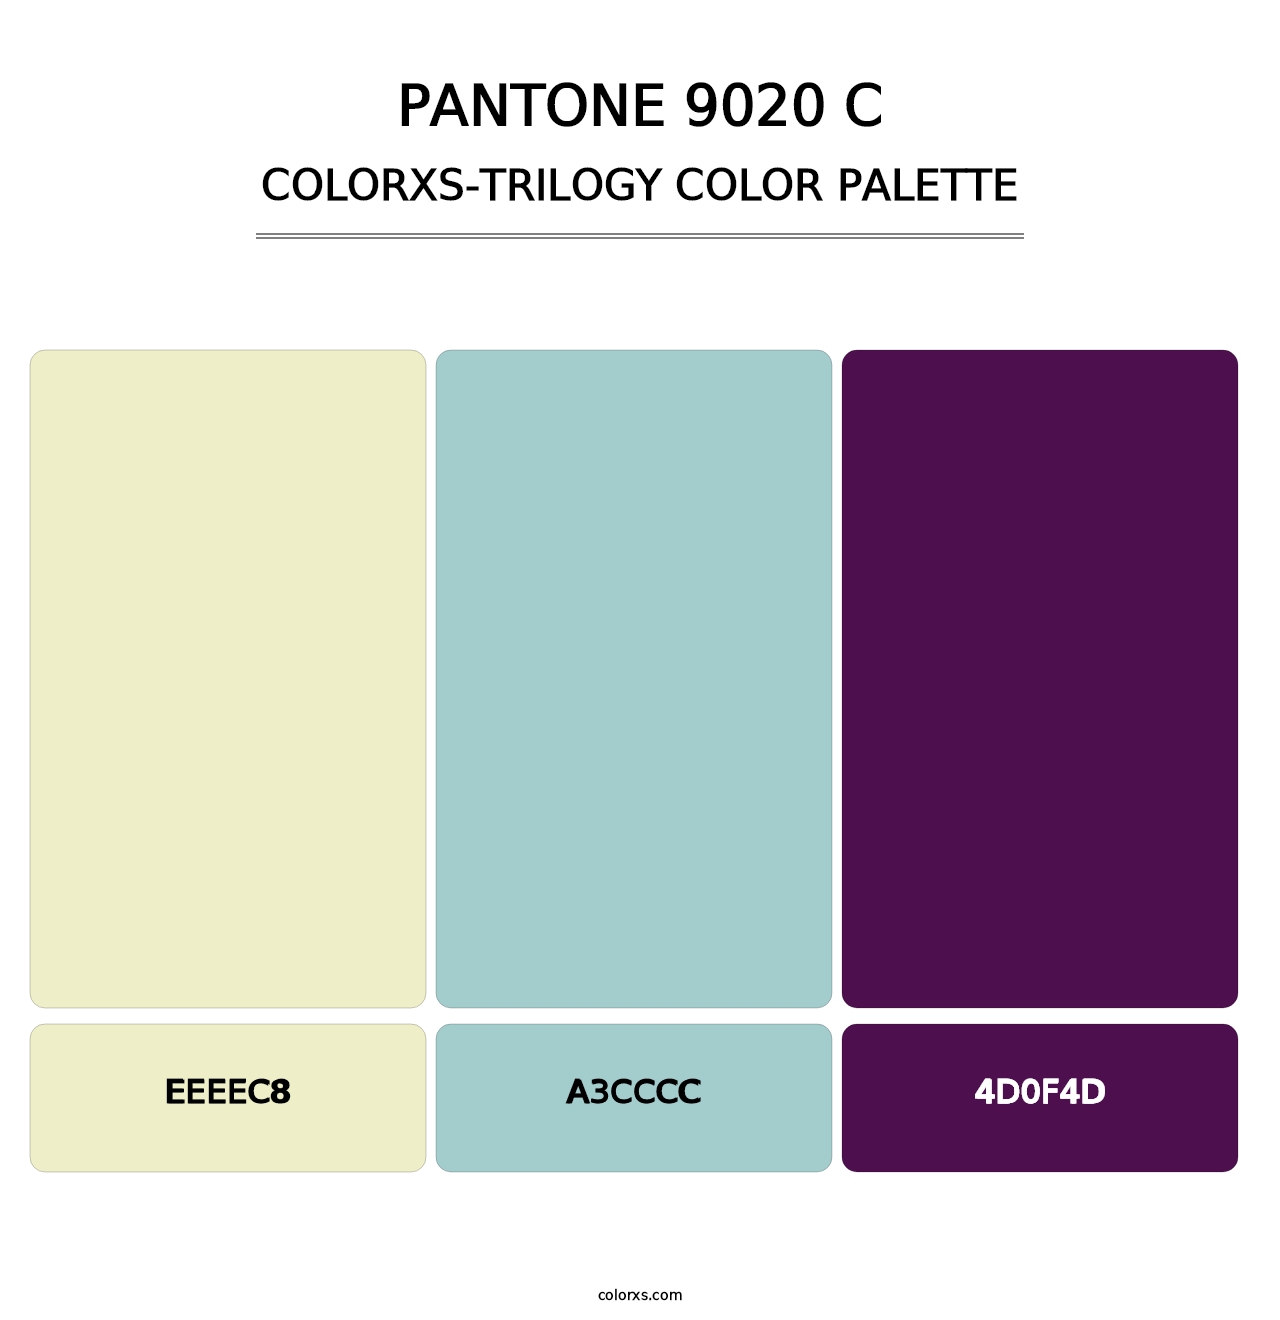 PANTONE 9020 C - Colorxs Trilogy Palette